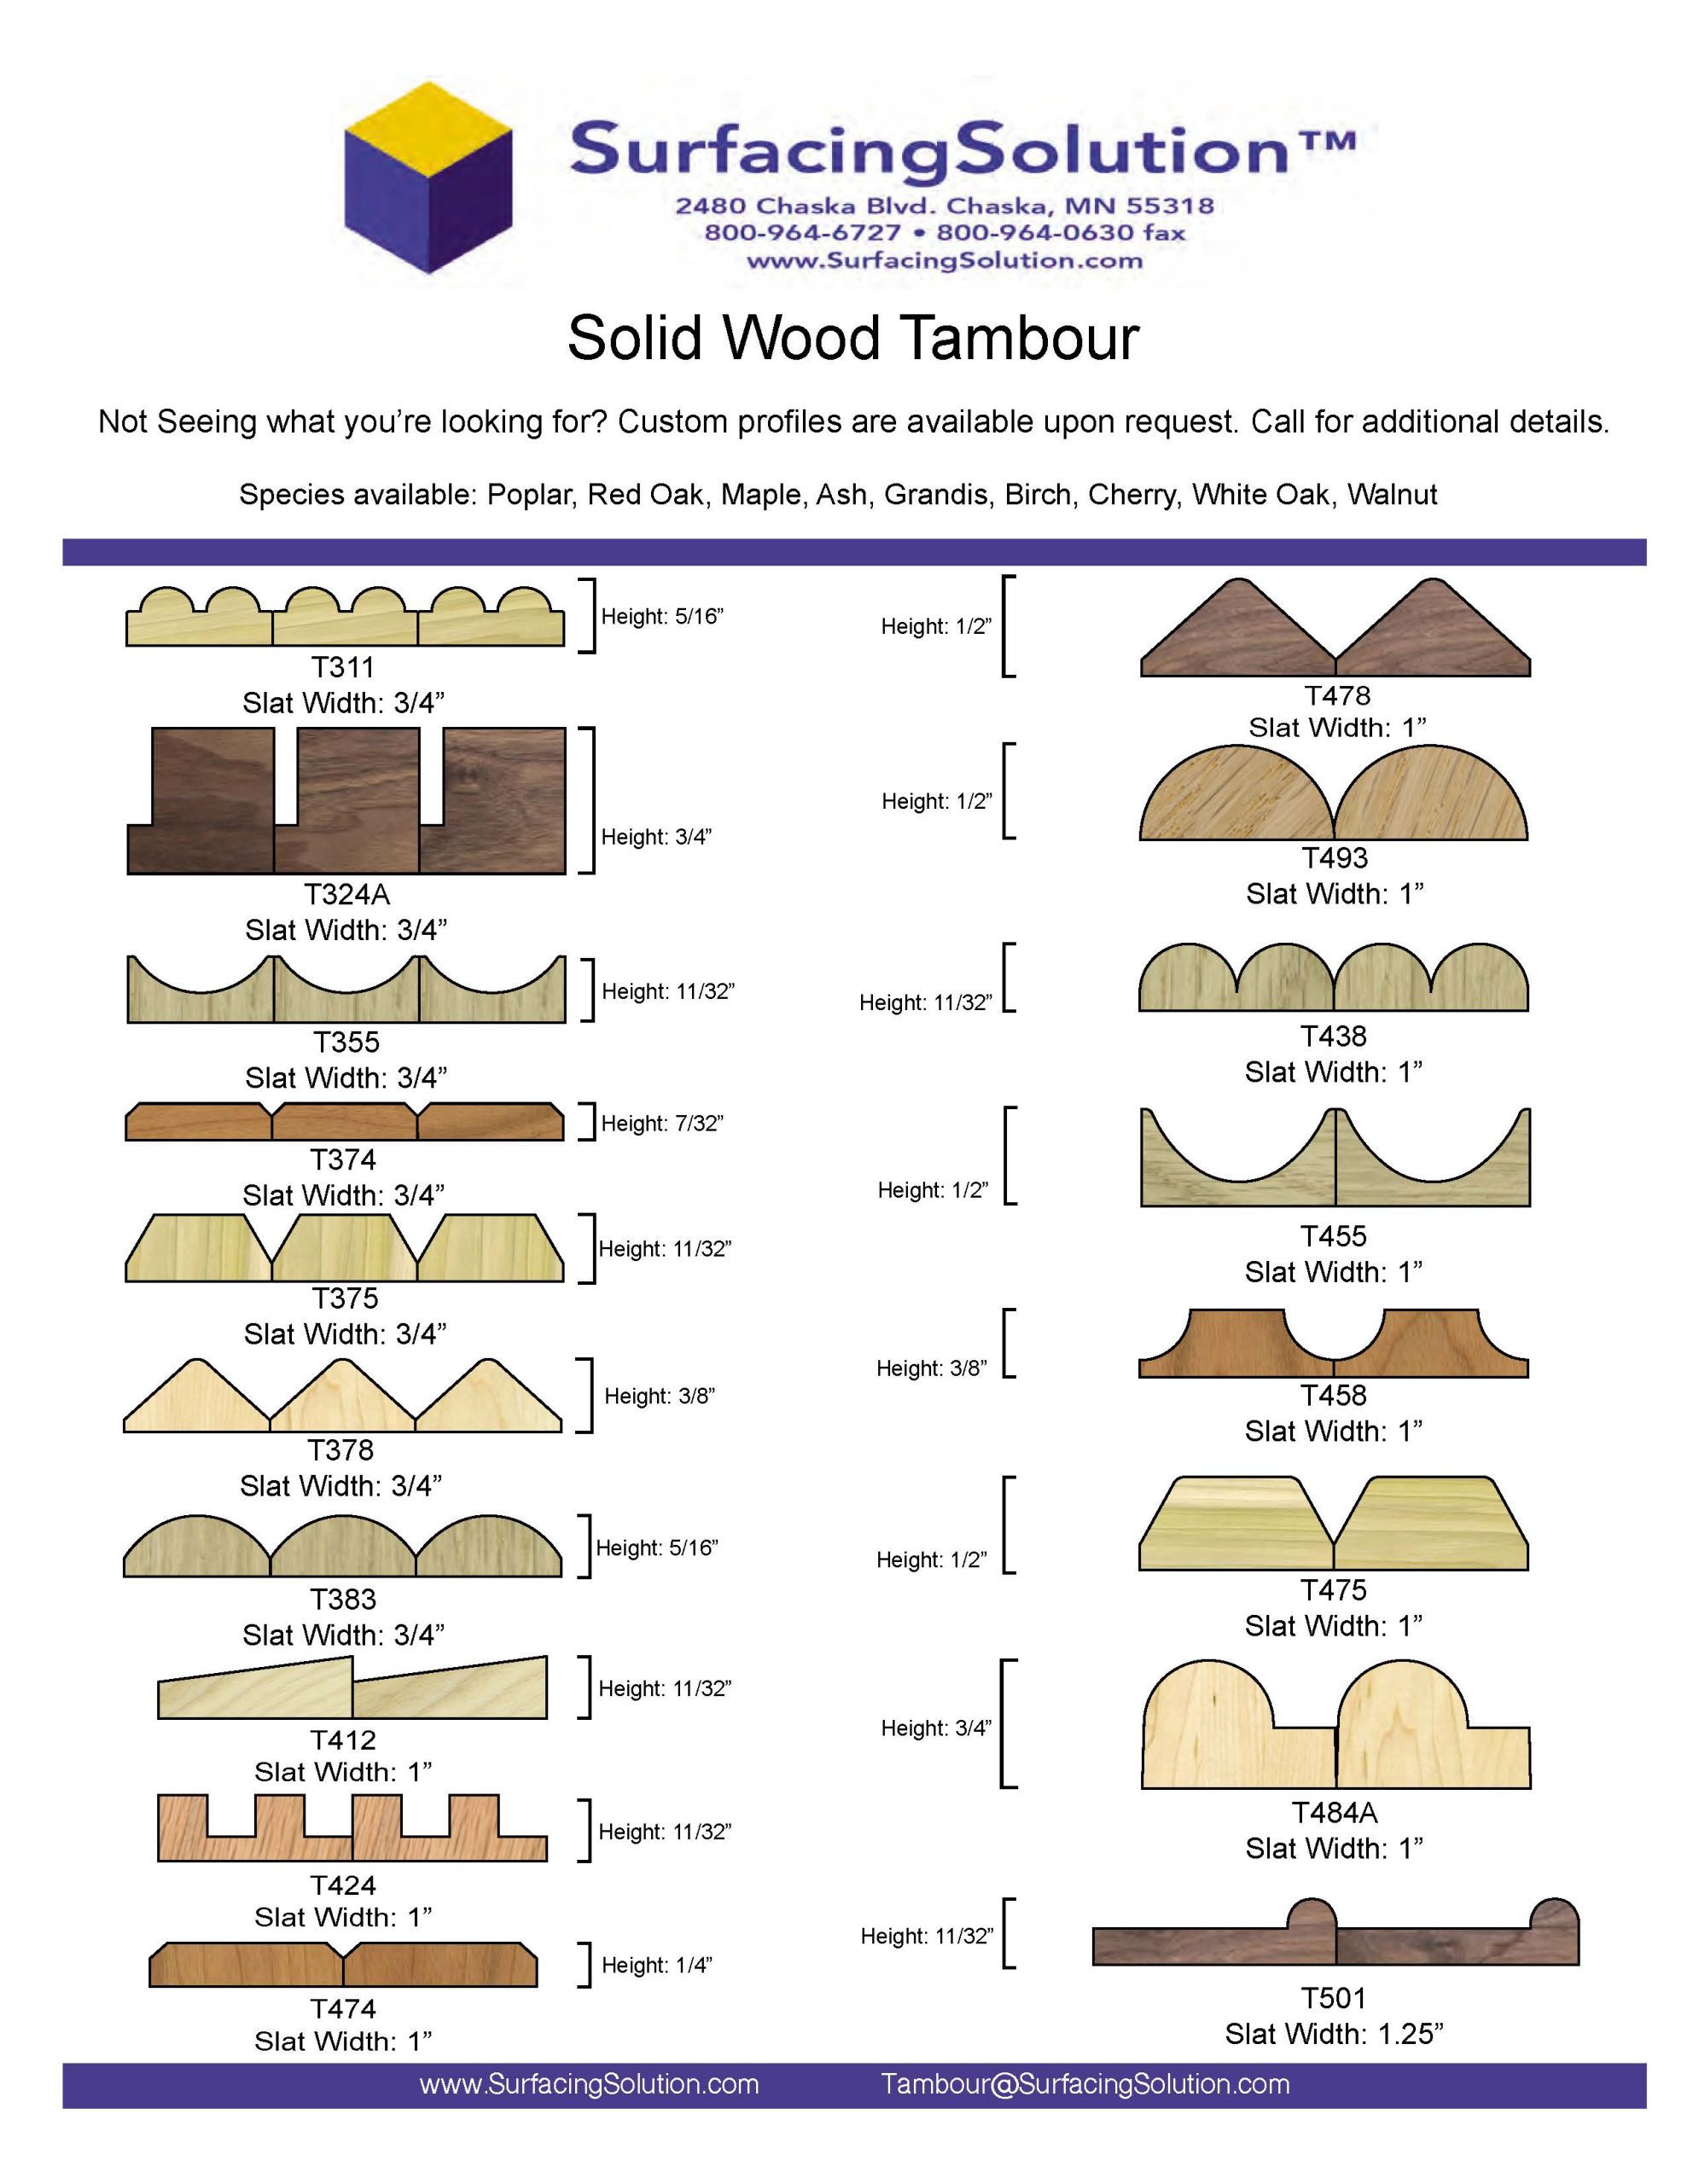 Board Wax  383 Wood Designs